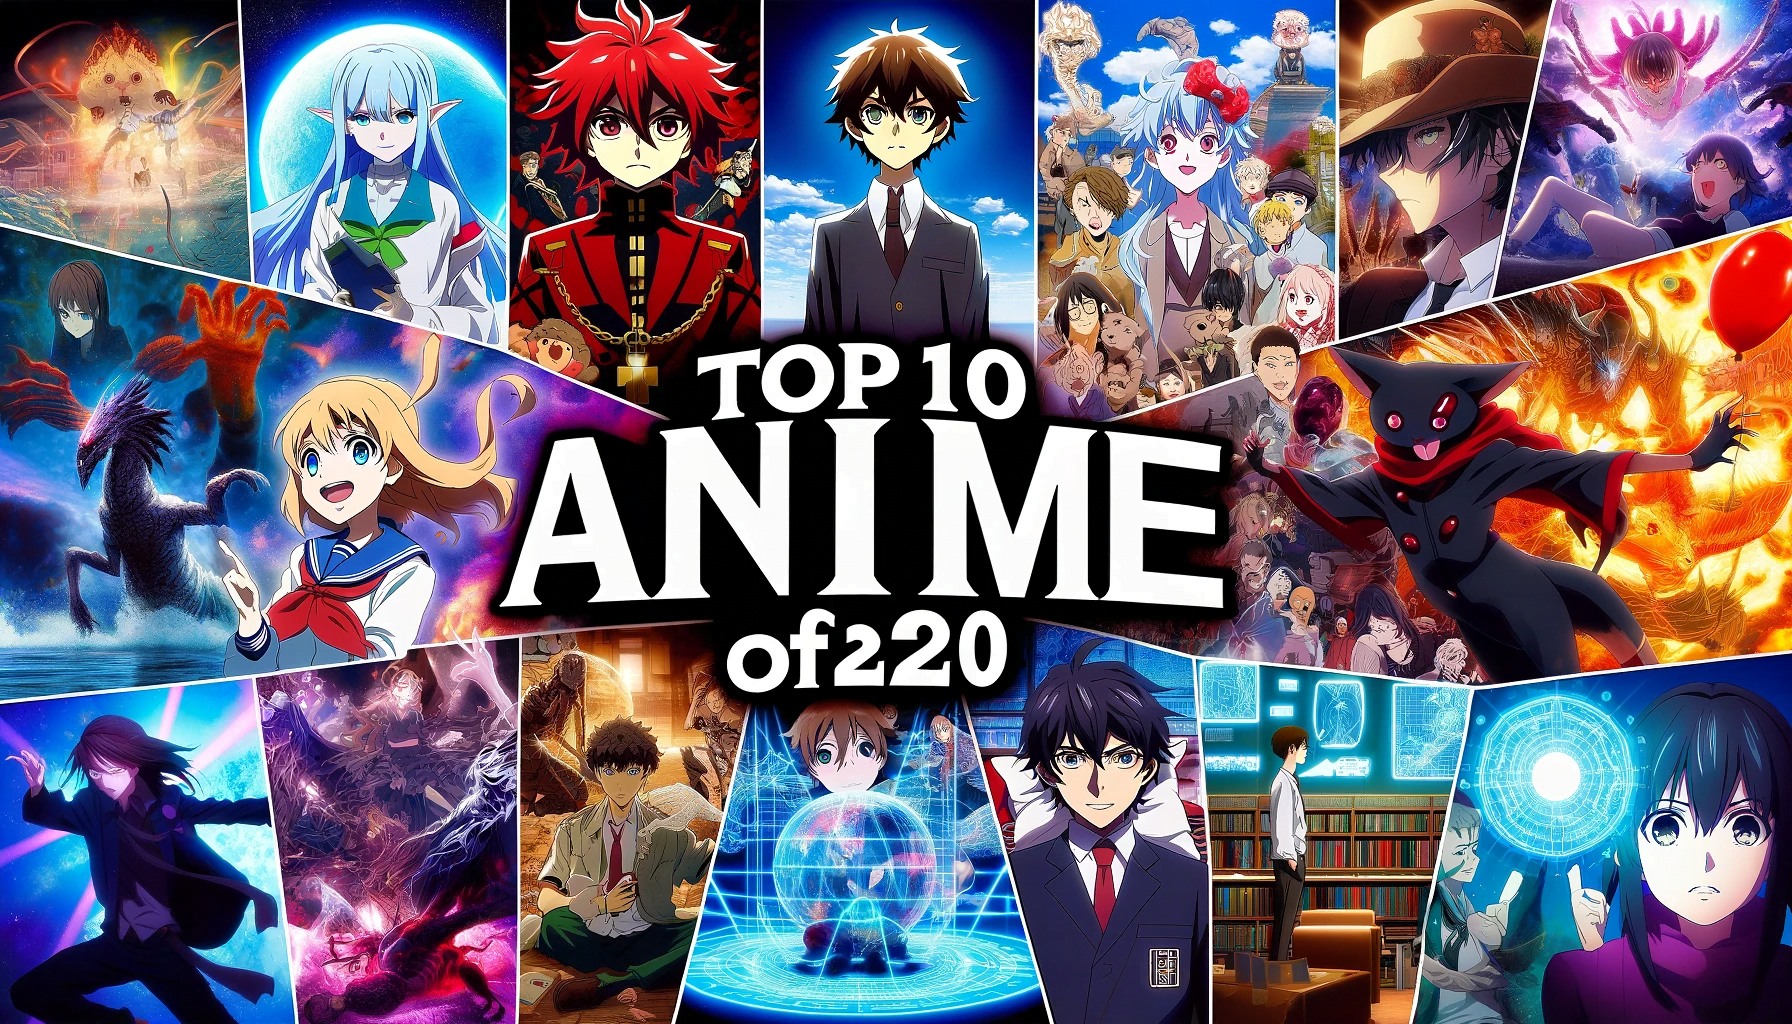 anime,anime eyes,anime memes,anime expo,anime movies,anime girls,anime feet,cute anime girl,anime twist,soul anime.